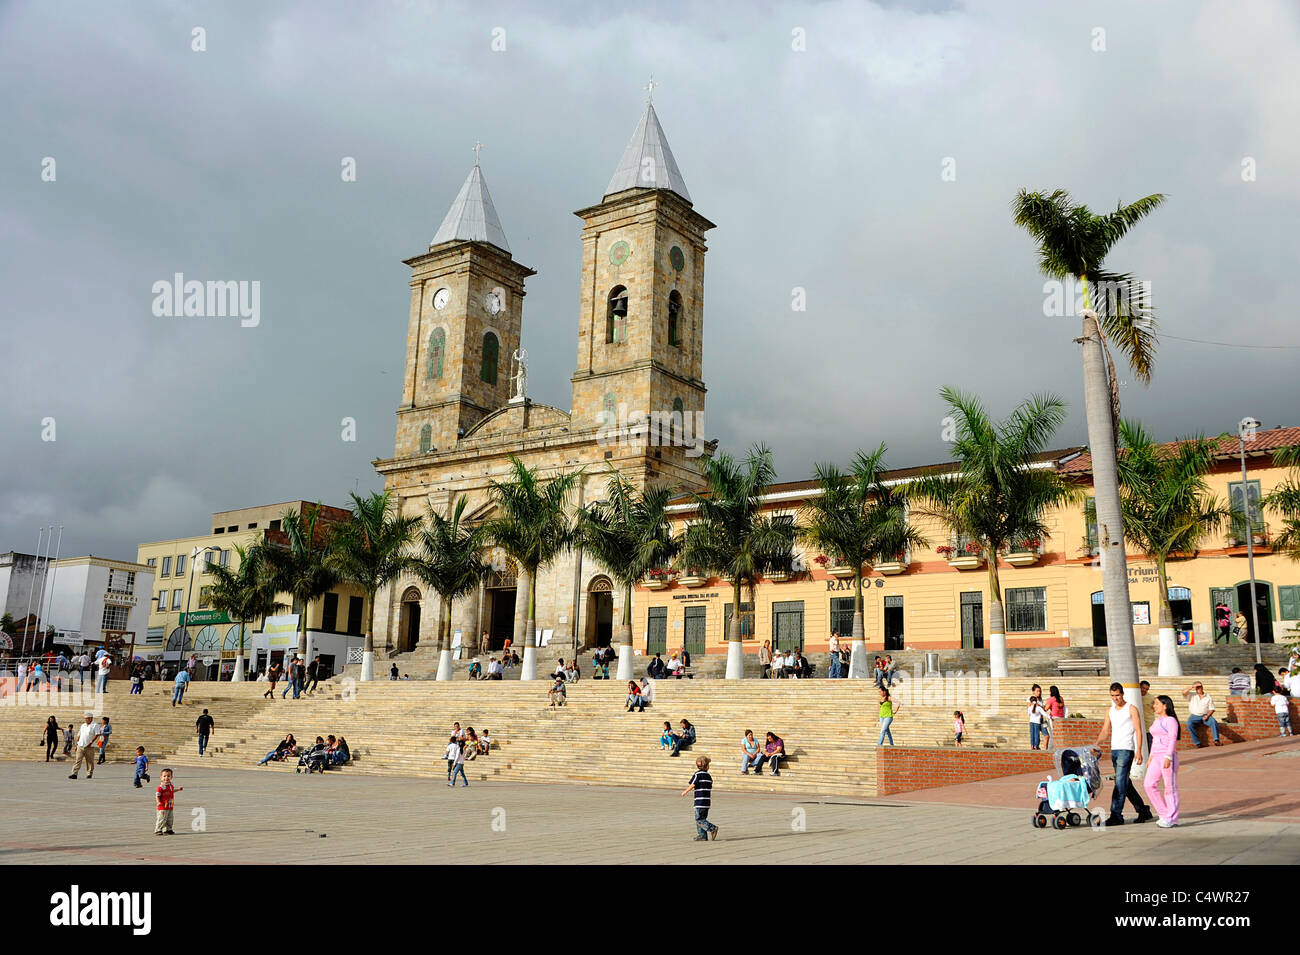 La piazza centrale della città di Fusagasuga quaranta miglia a sud-ovest della capitale Bogotà, Colombia. Foto Stock